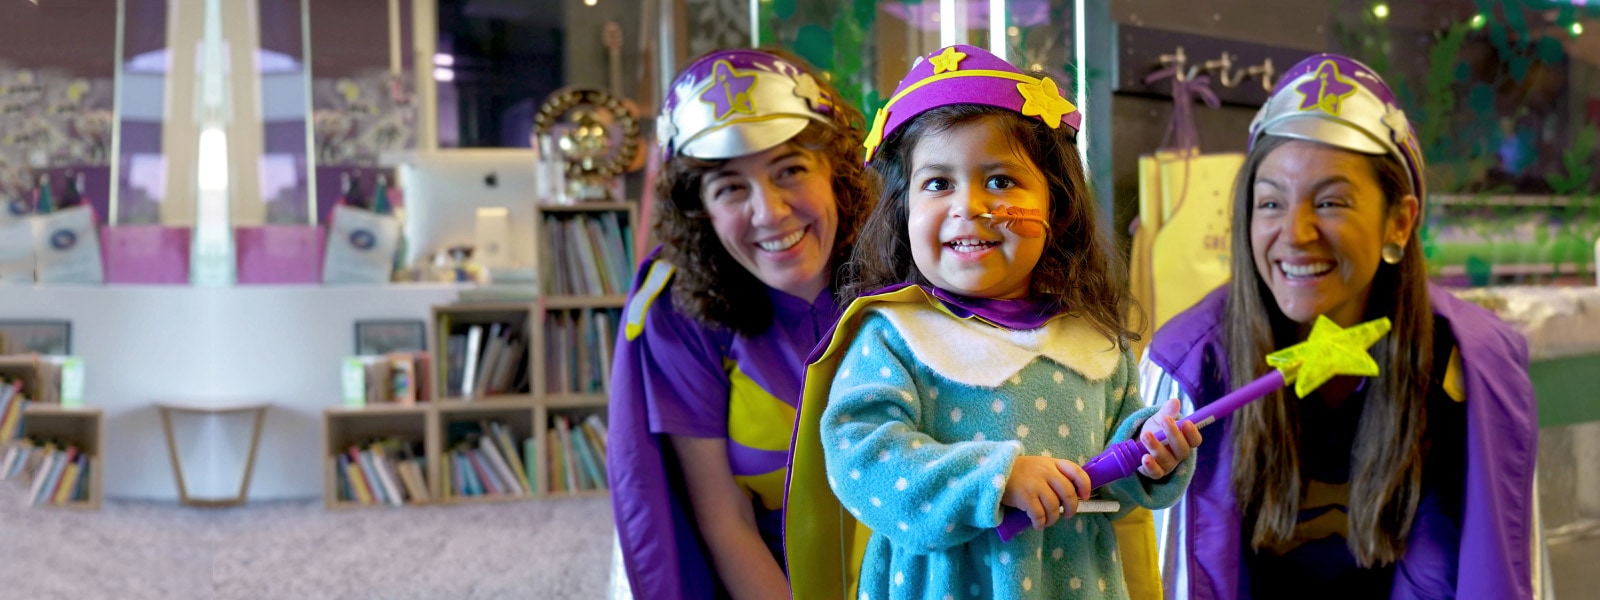 Dos voluntarias adultas disfrazadas ríen junto a una niña disfrazada que sostiene una varita mágica